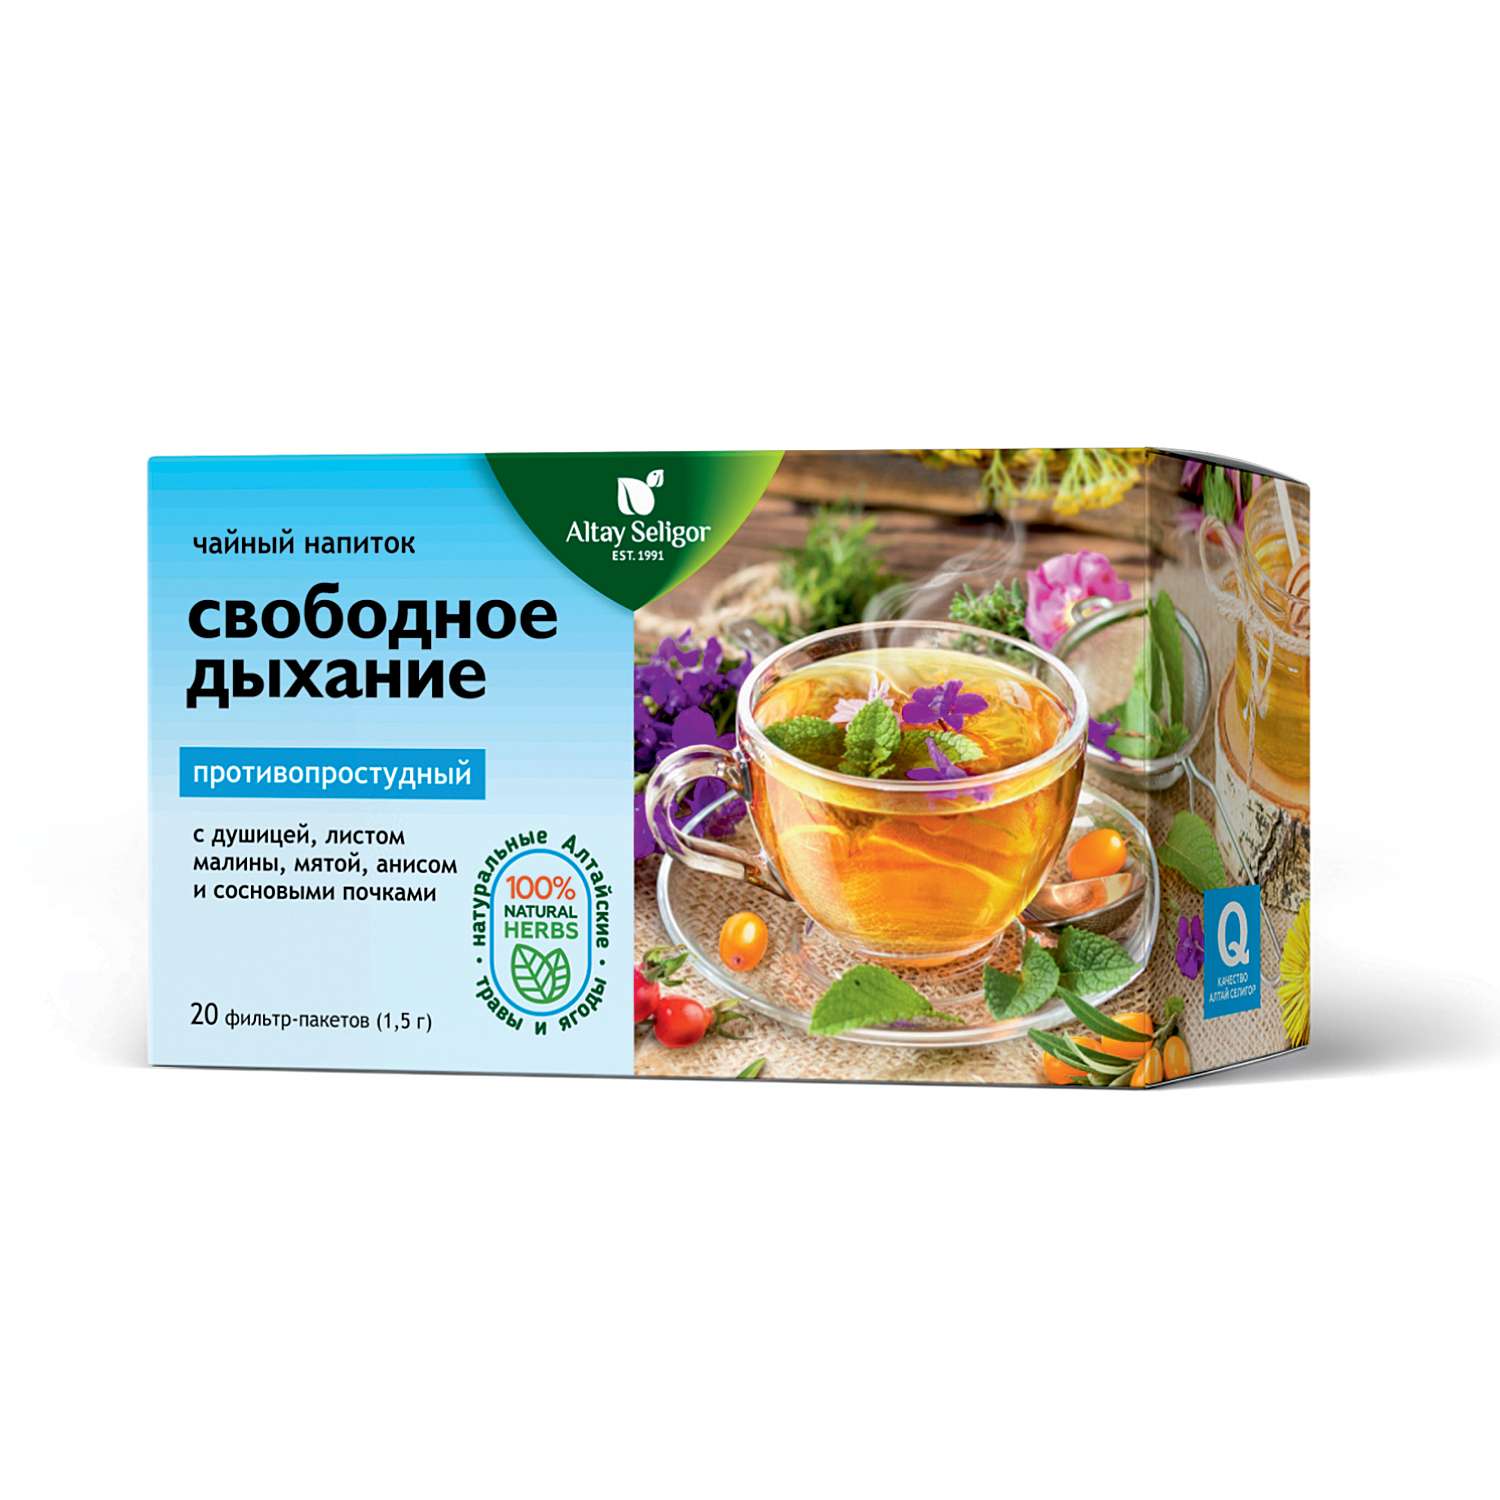 Напиток чайный Алтай-Селигор Свободное дыхание бронхо-легочный 20пакетиков - фото 1